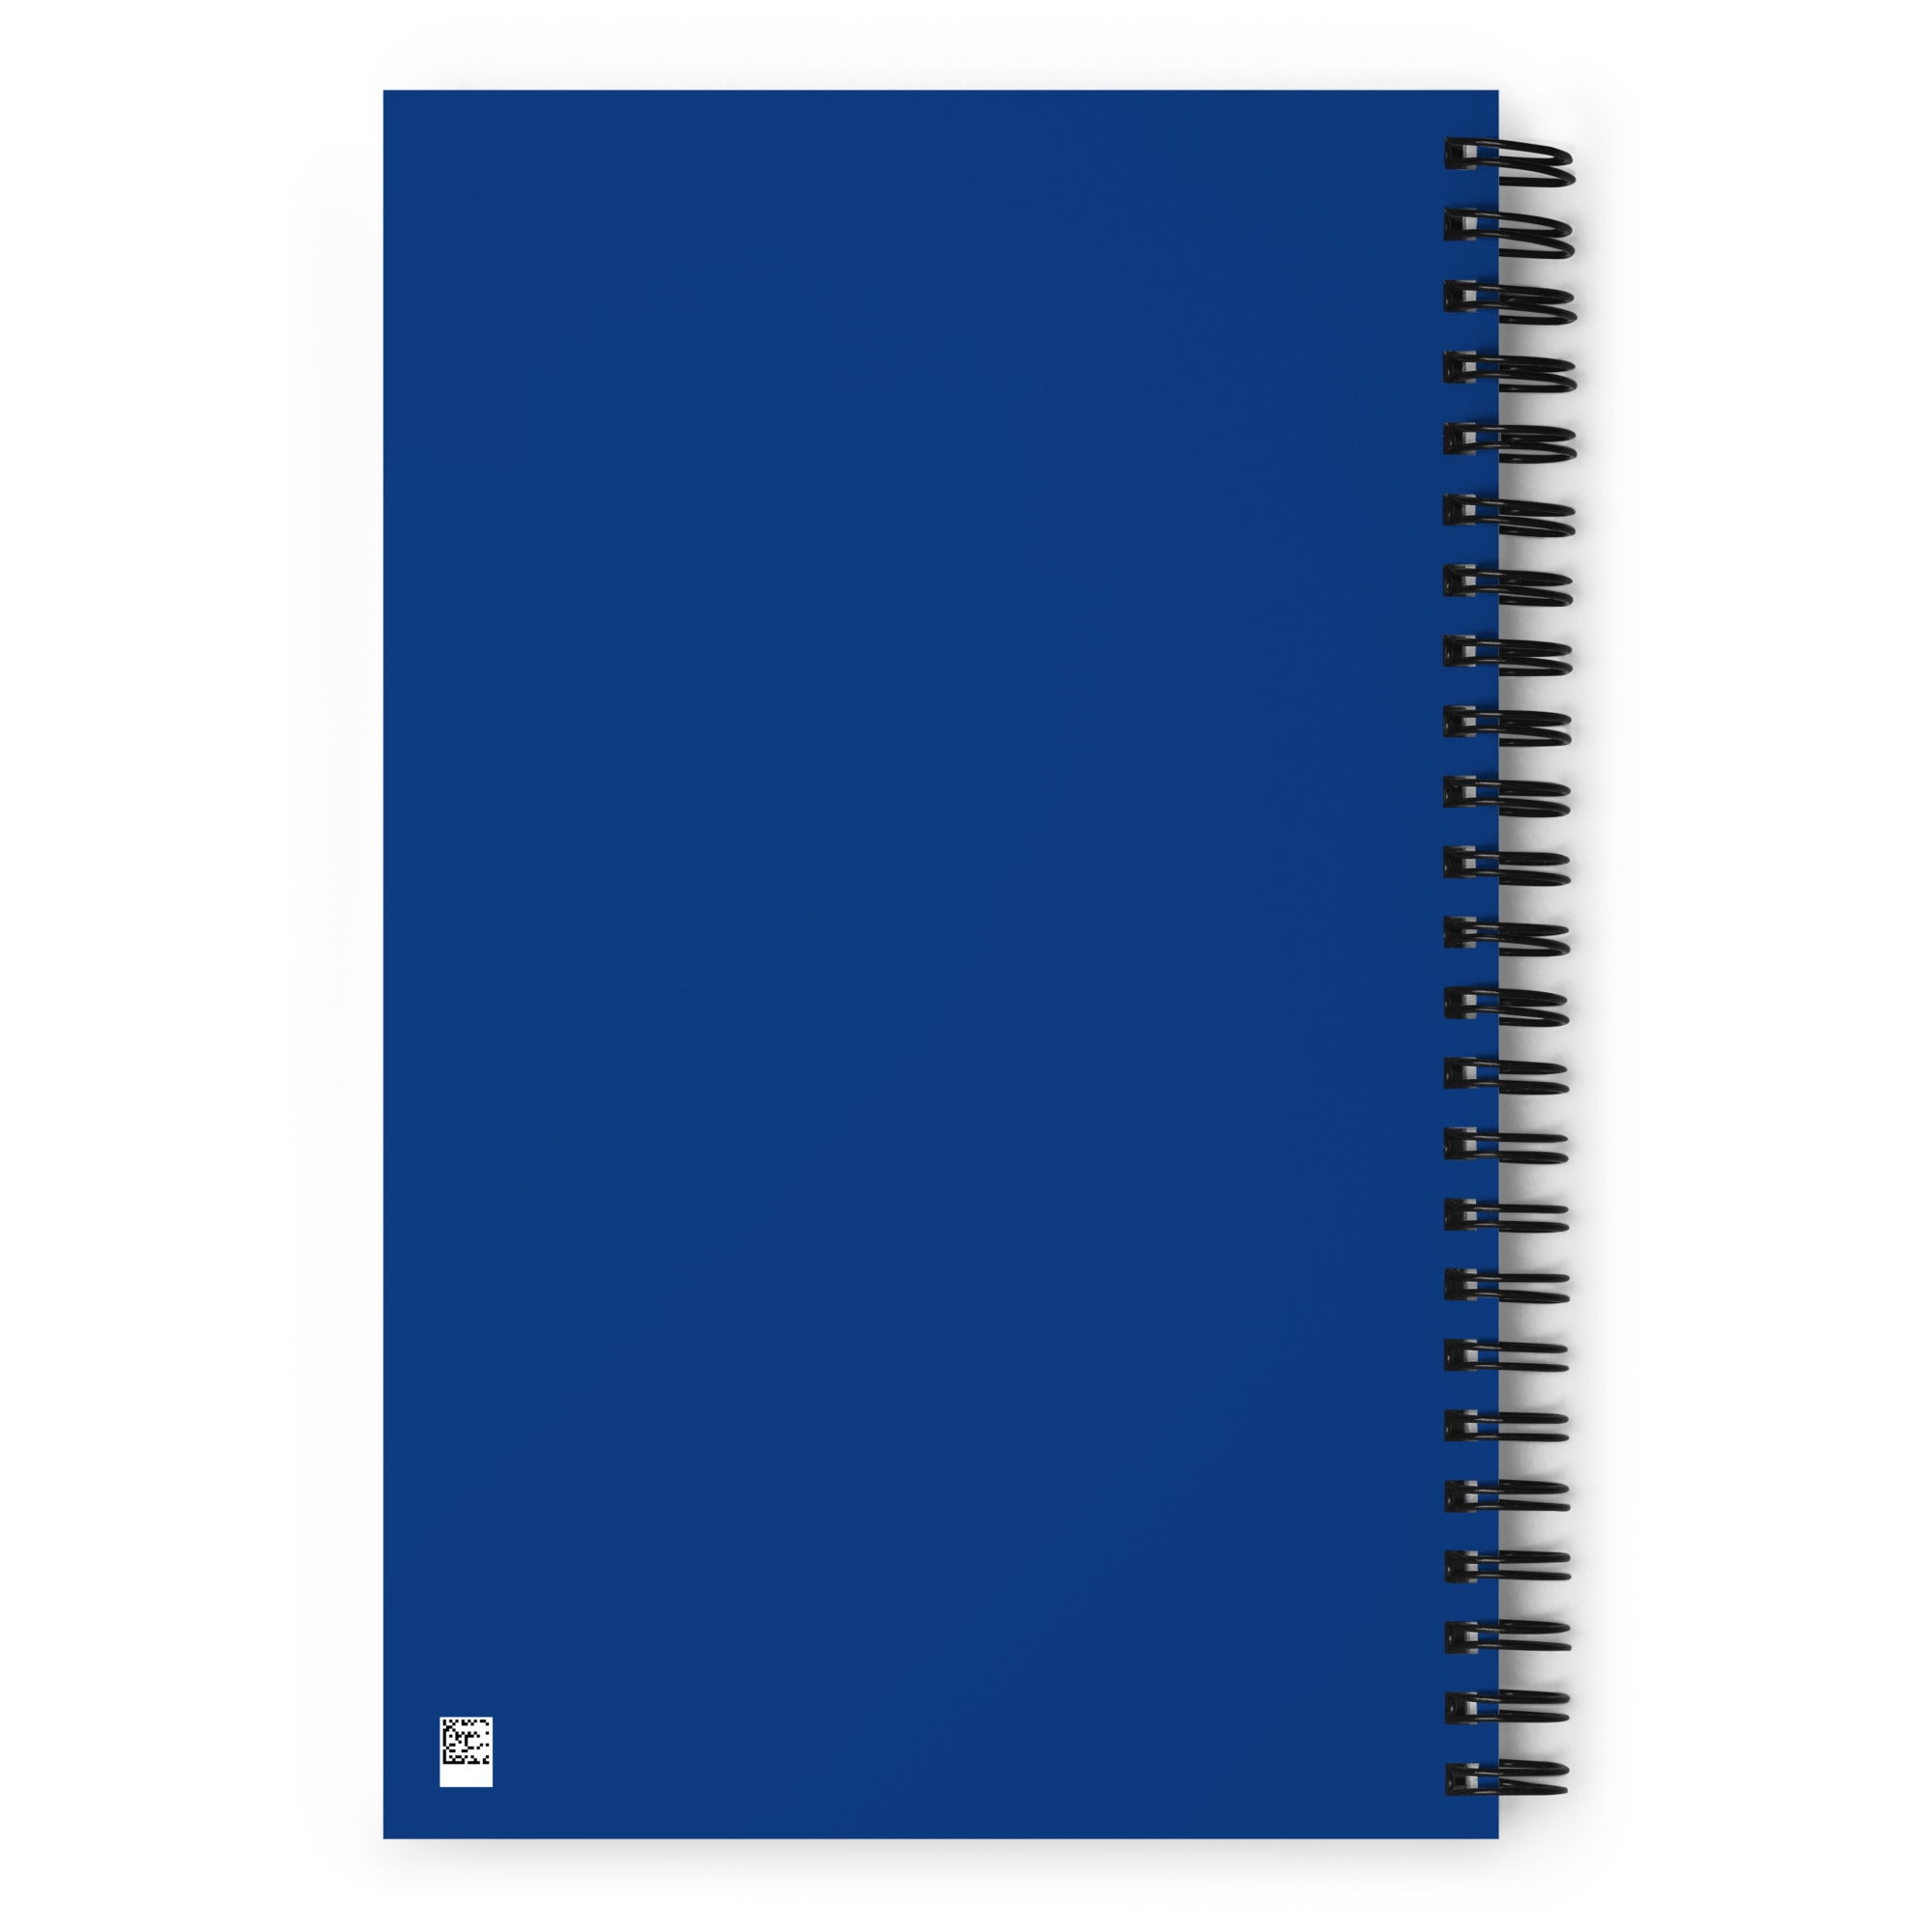 TOCS Spiral notebook